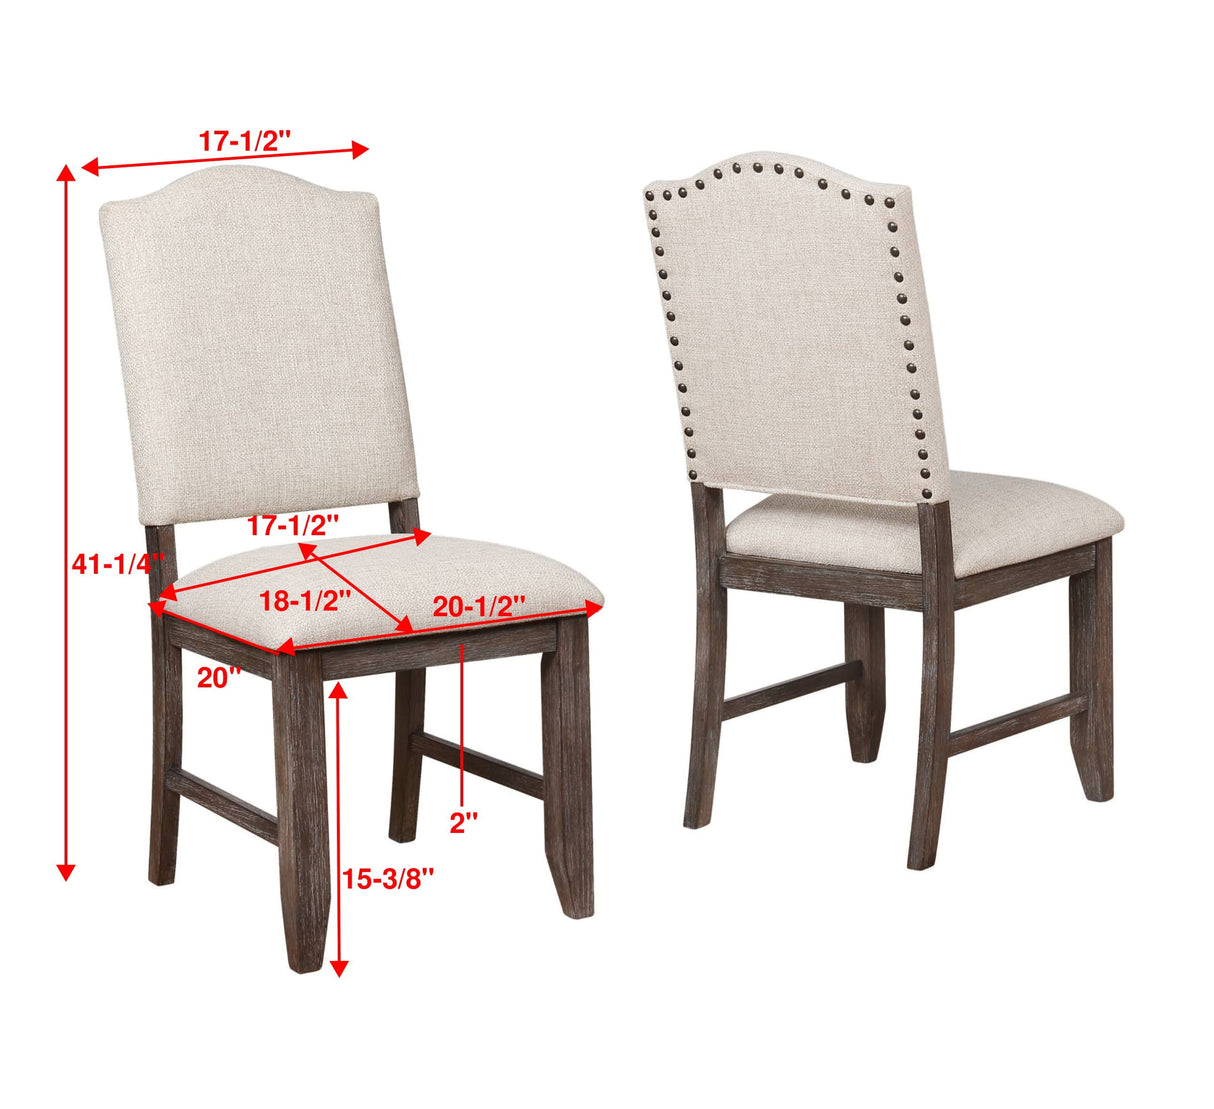 Regent - Side Chair (Set Of 2)